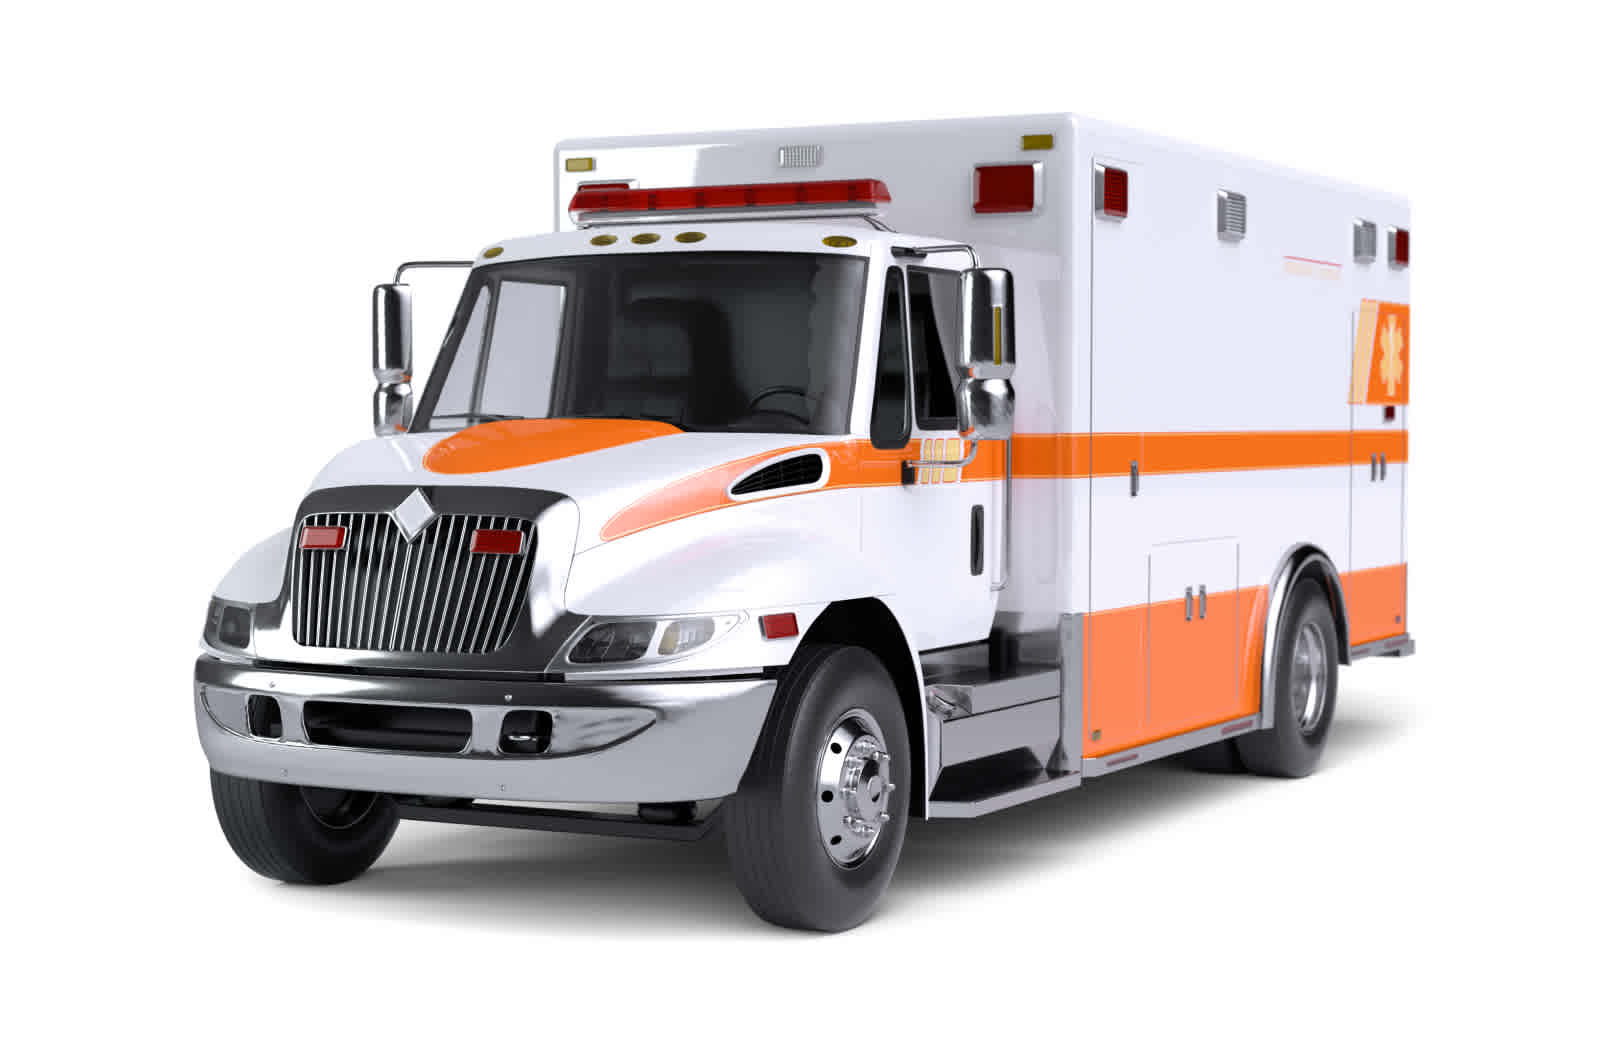 White ambulance with orange stripes